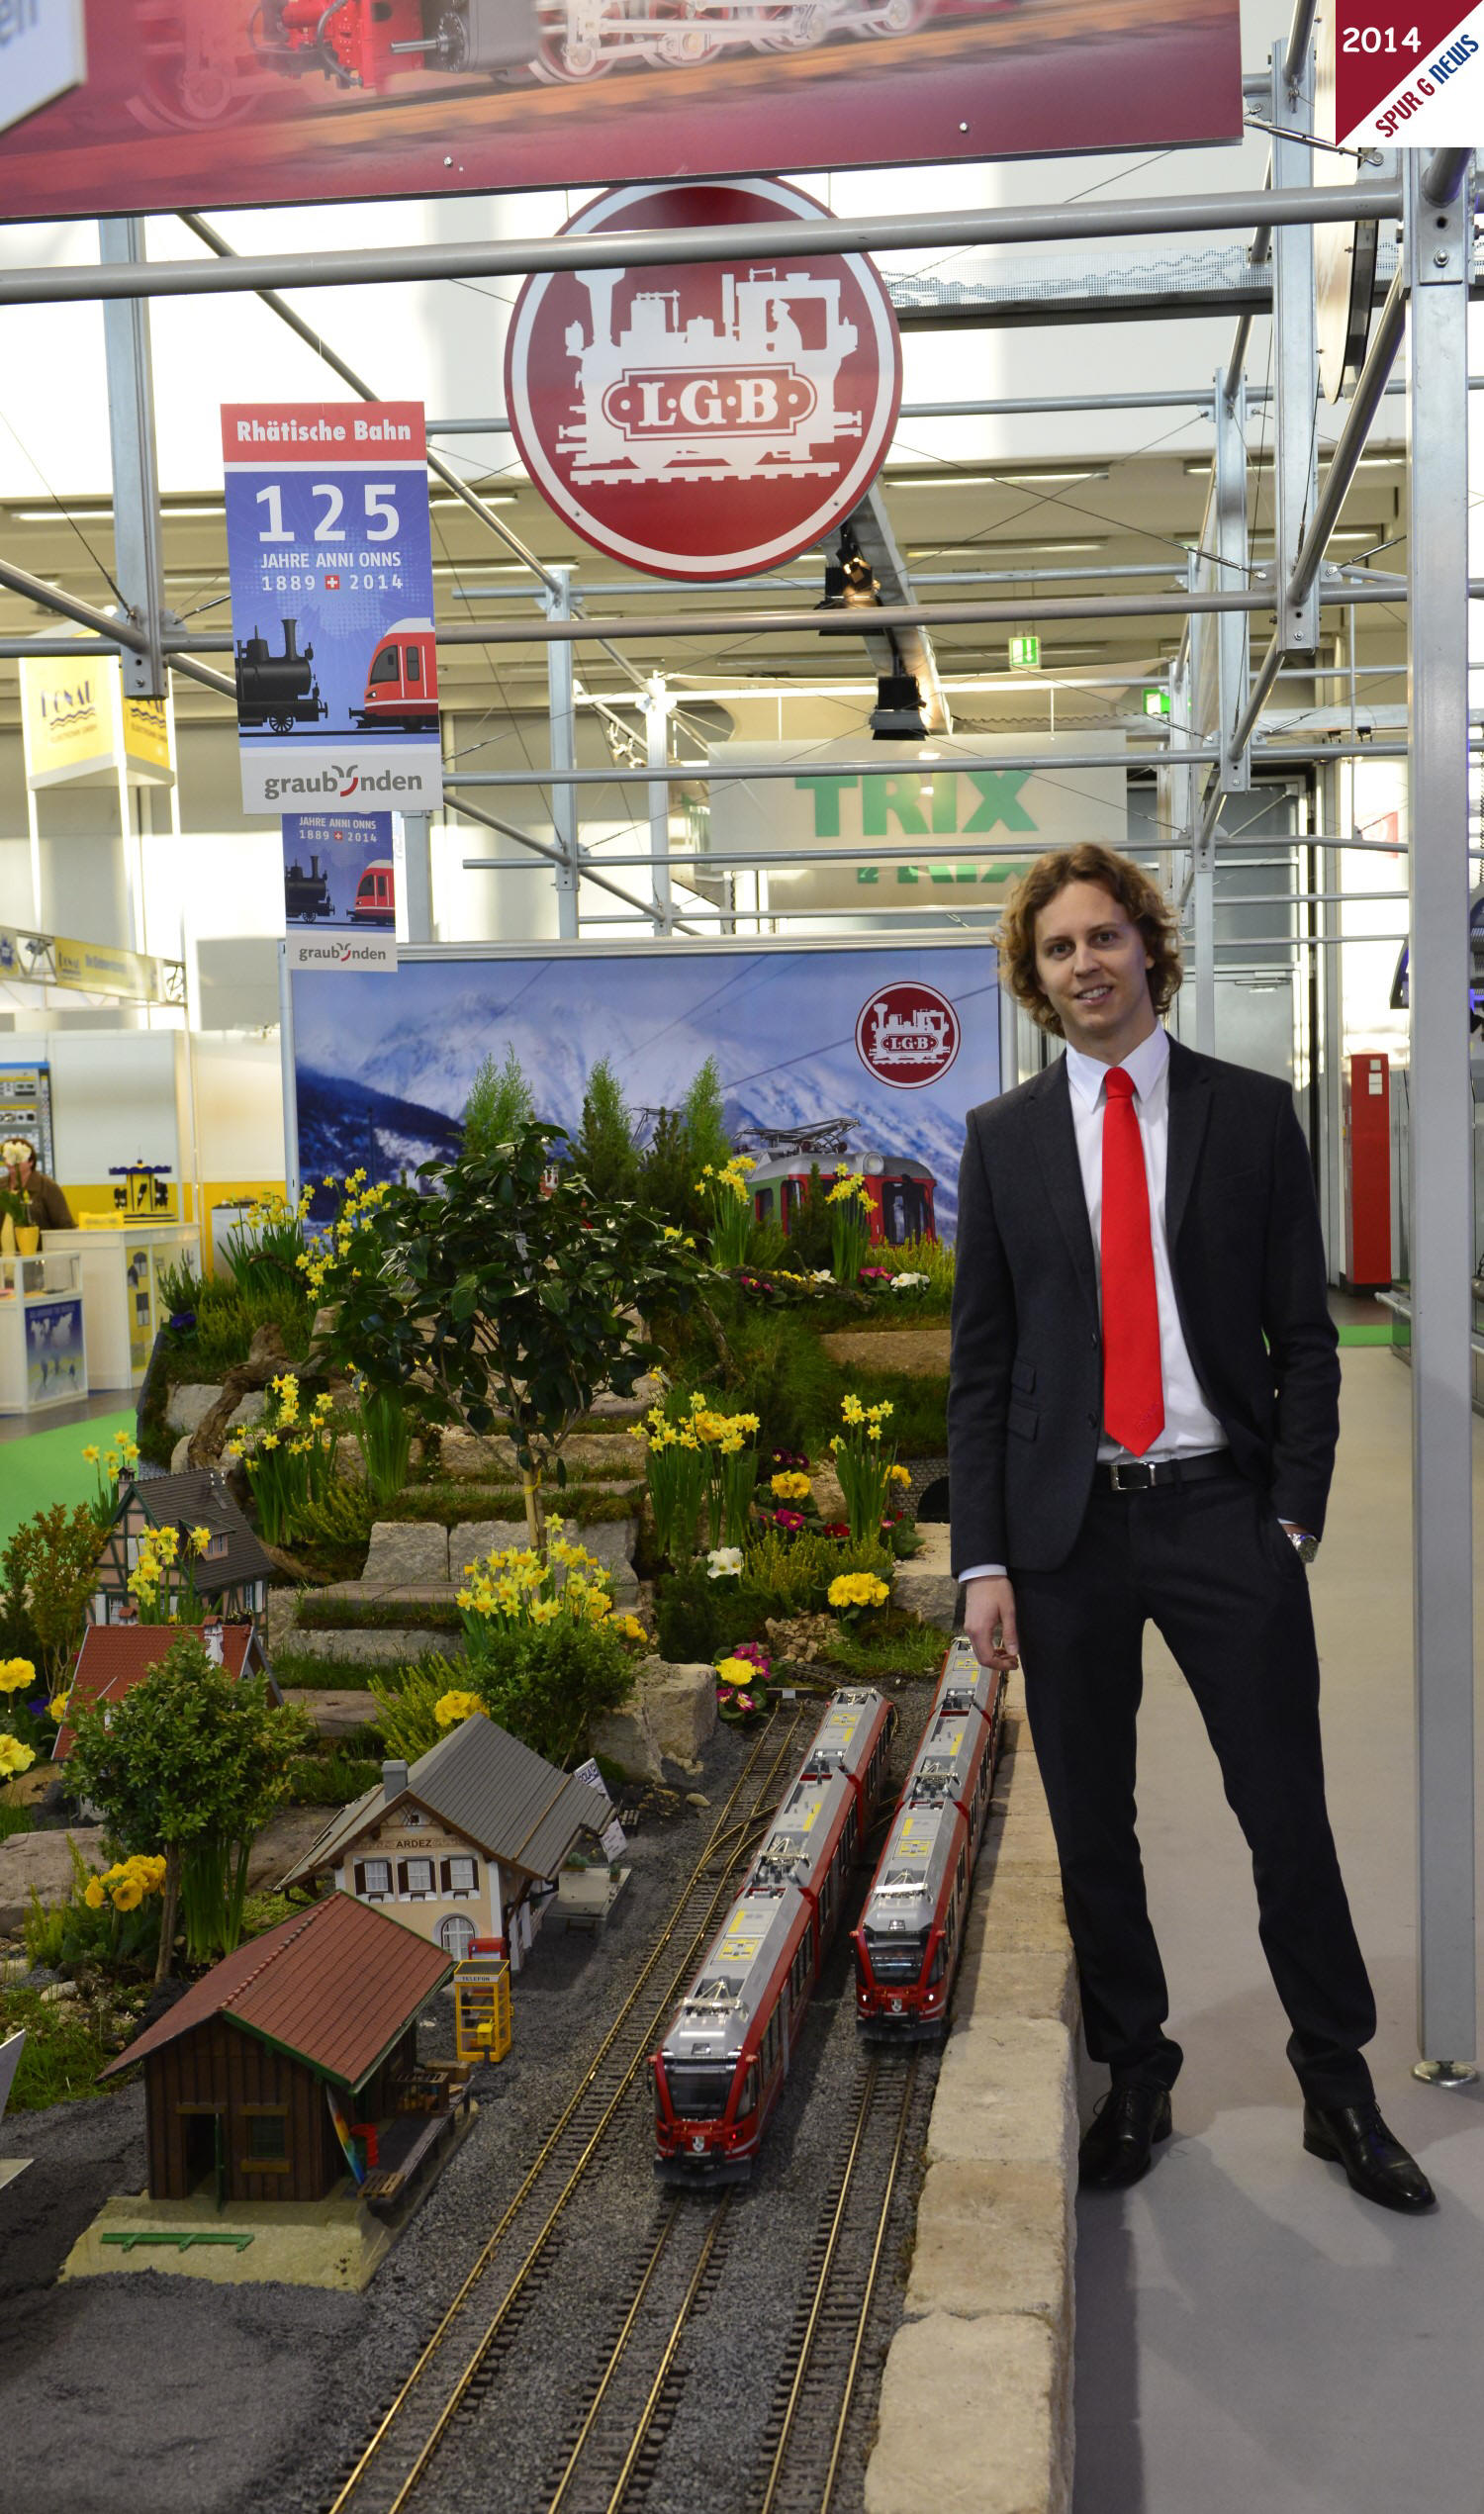 Herr Florian Sieber - Geschftsfhrer Mrklin - Trix - LGB - vor der Gartenbahnanlage auf der Spielwarenmesse 2014